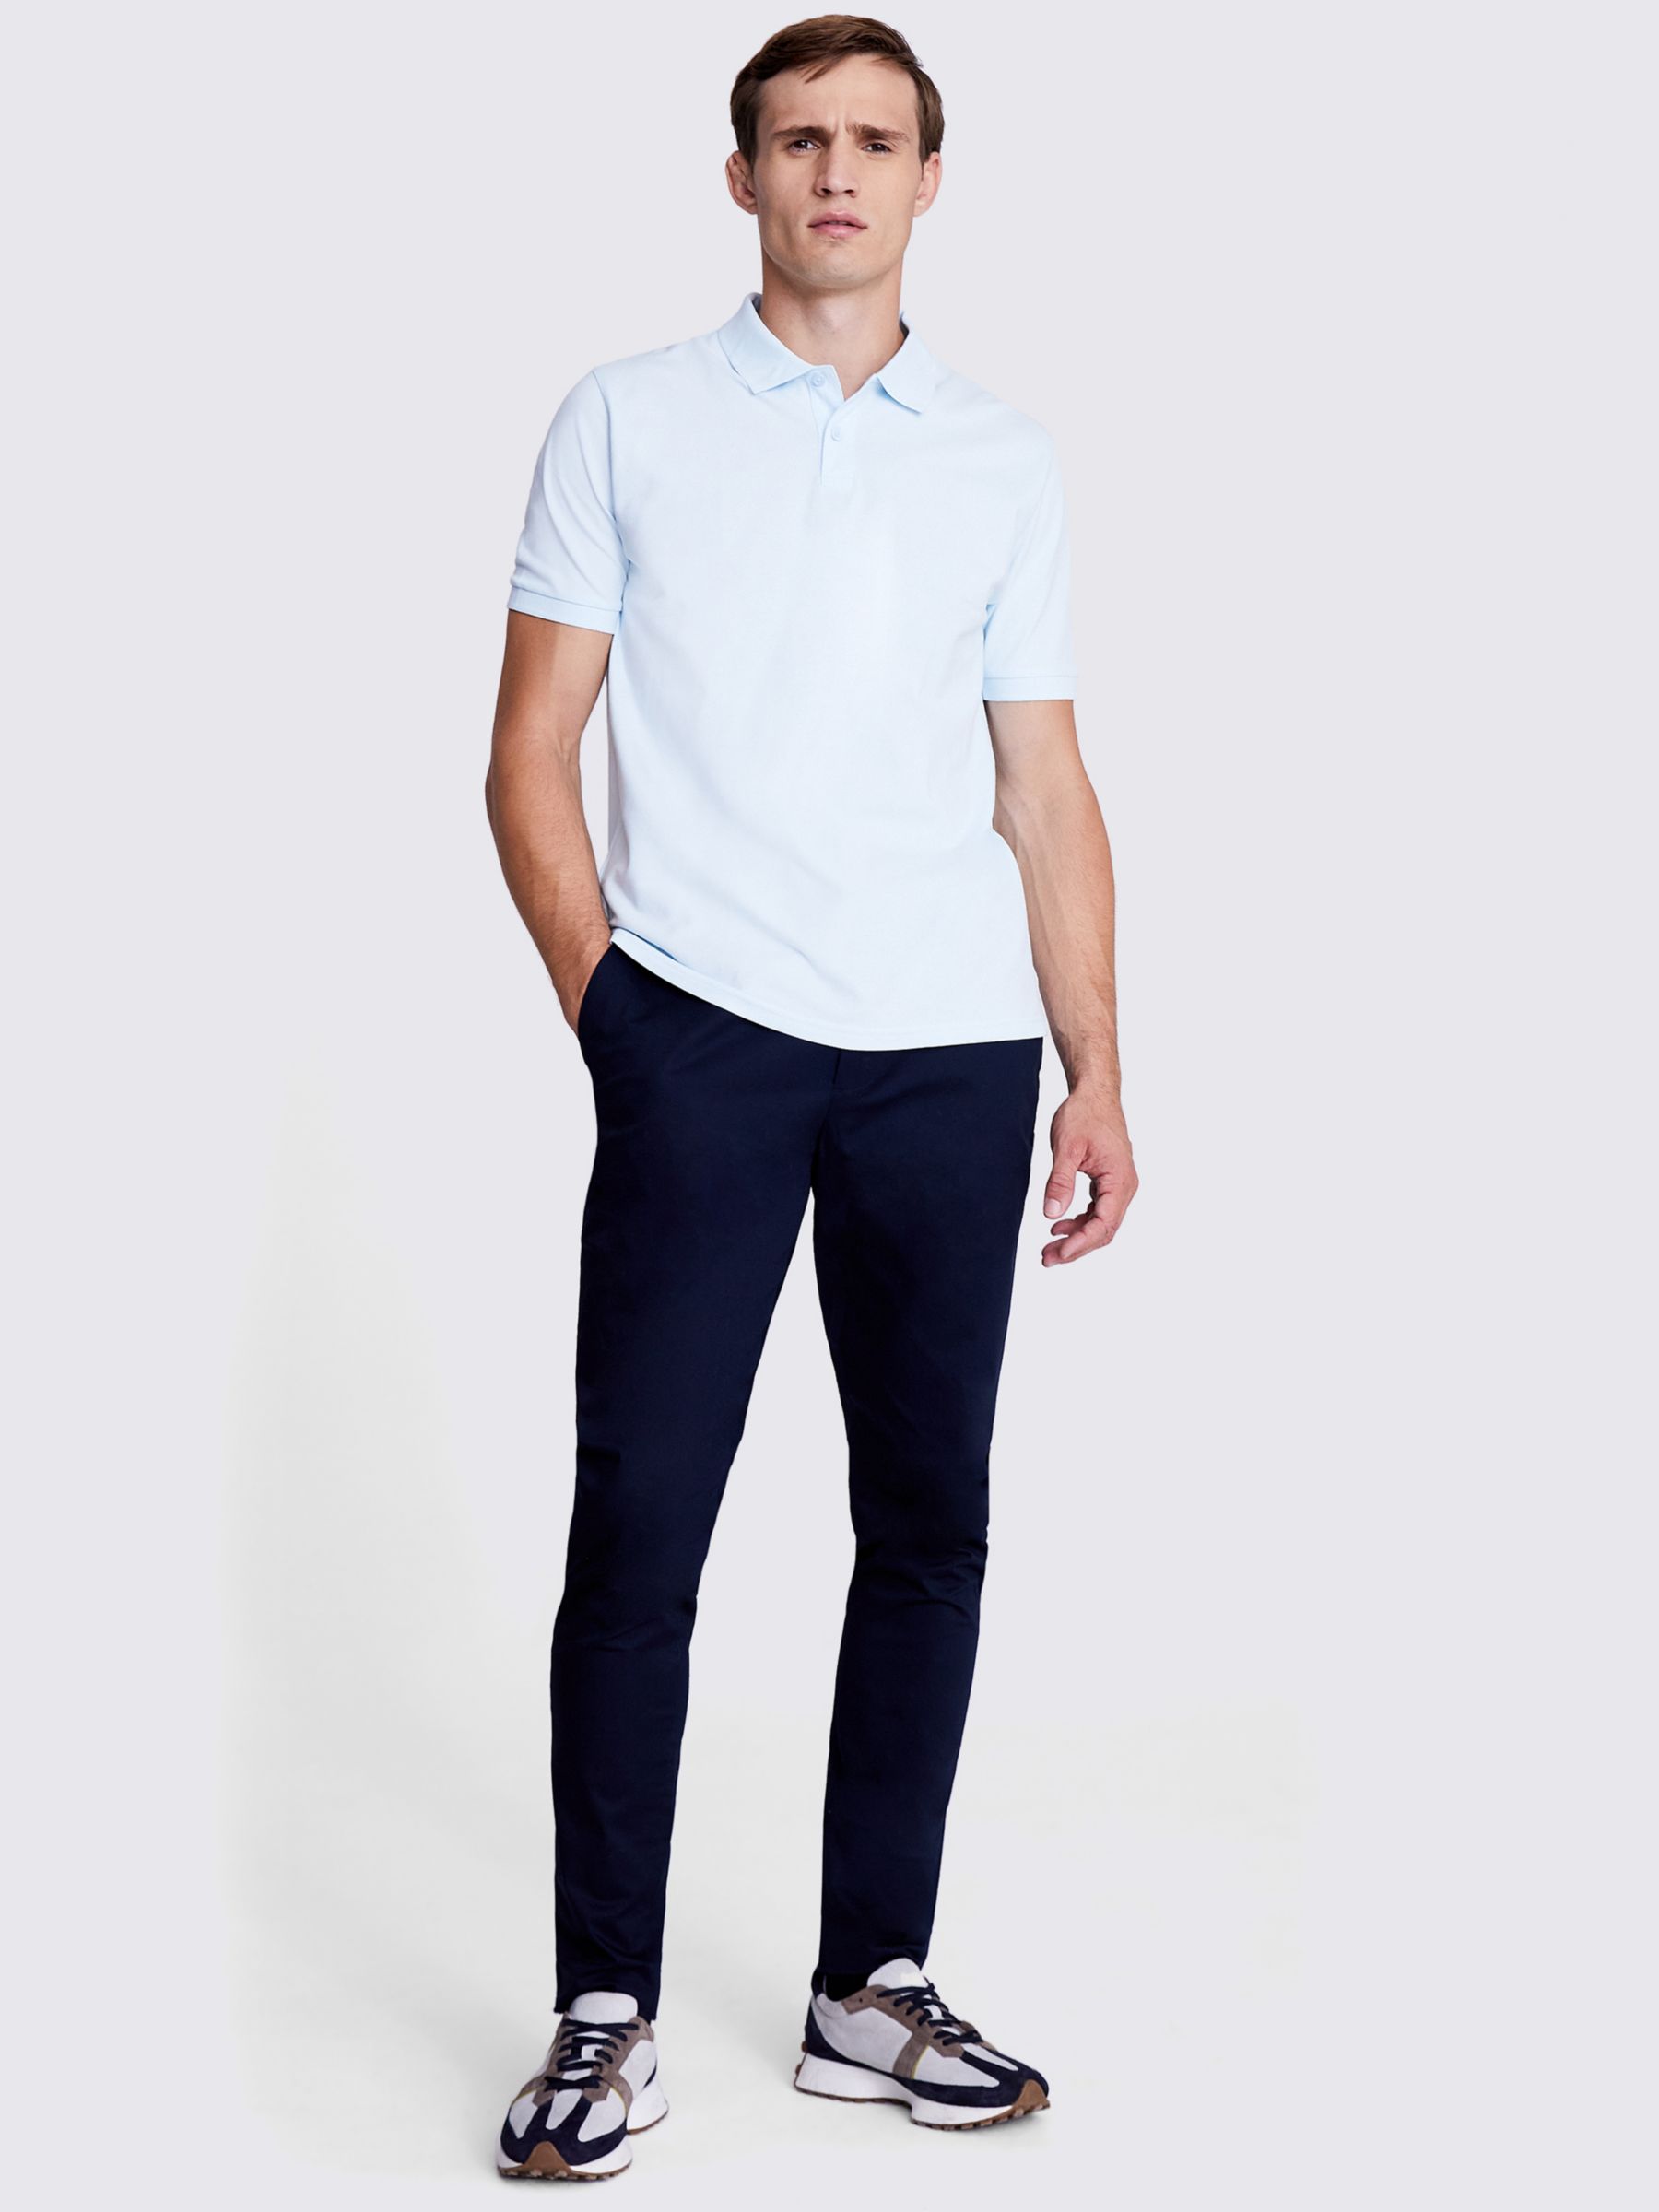 Moss Pique Short Sleeve Polo Shirt, Light Blue, S